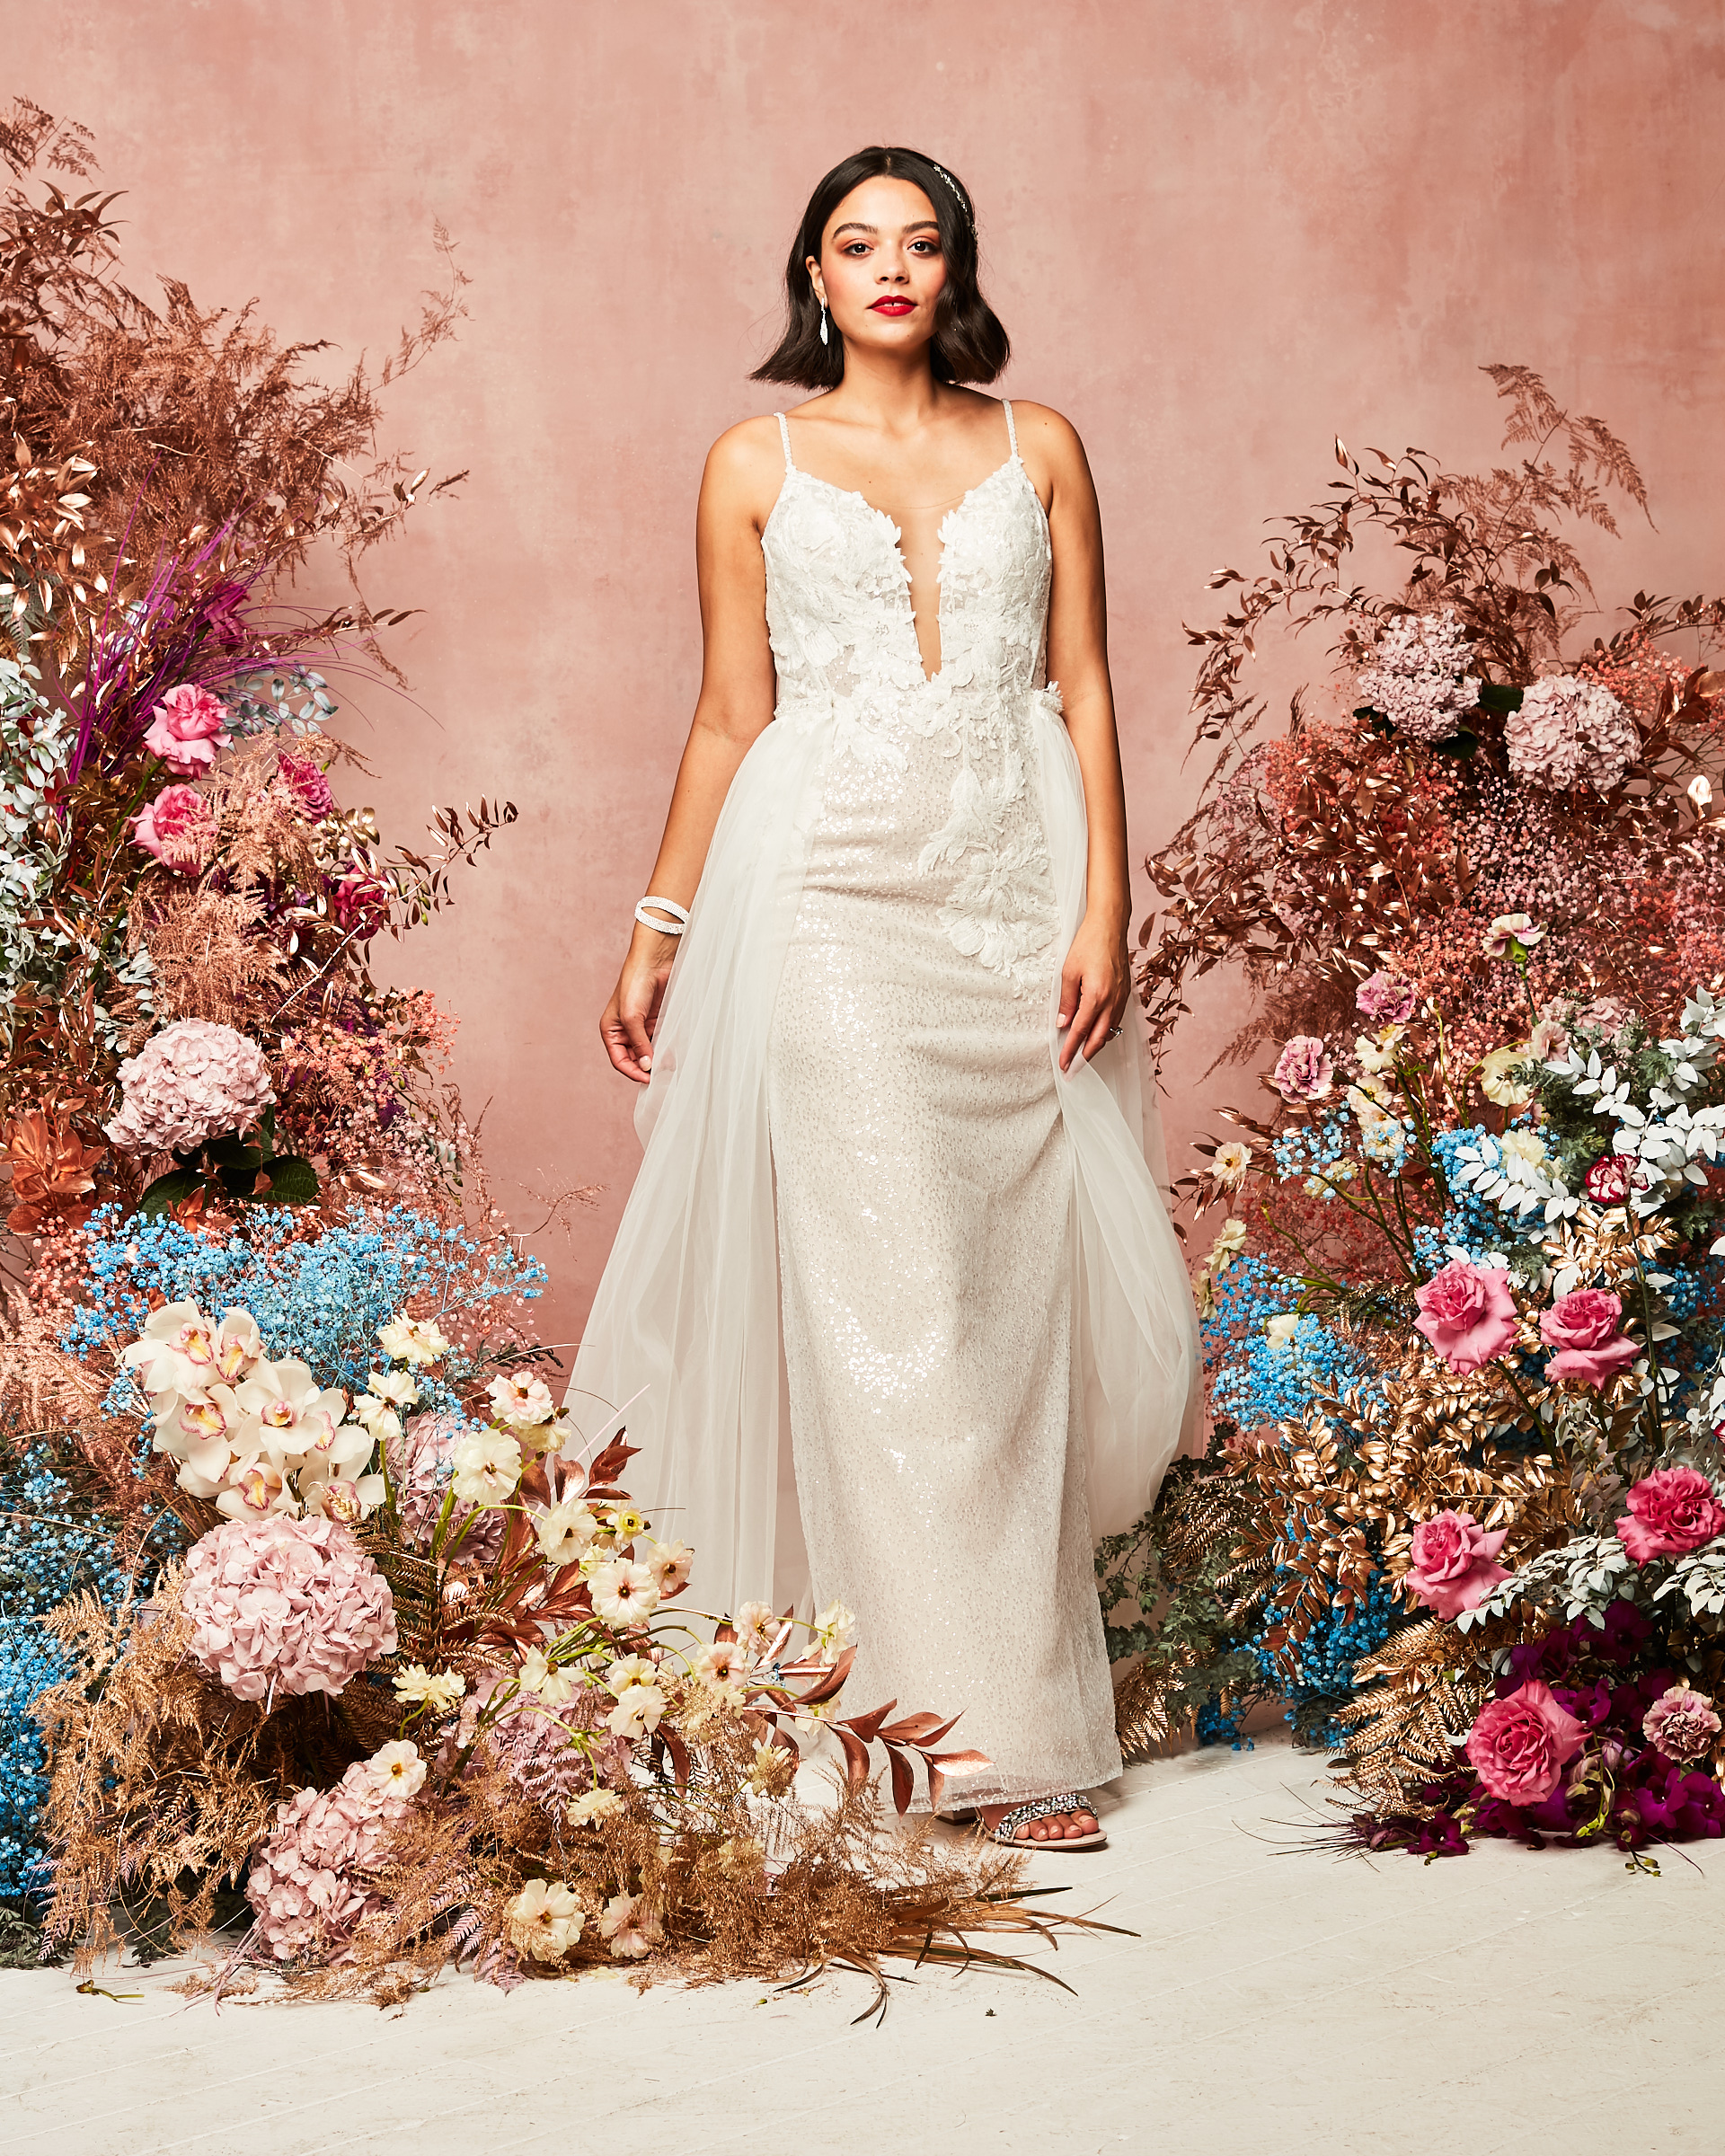 deep plunge neckline gown wedding dress David's Bridal Spring 2021 Collection